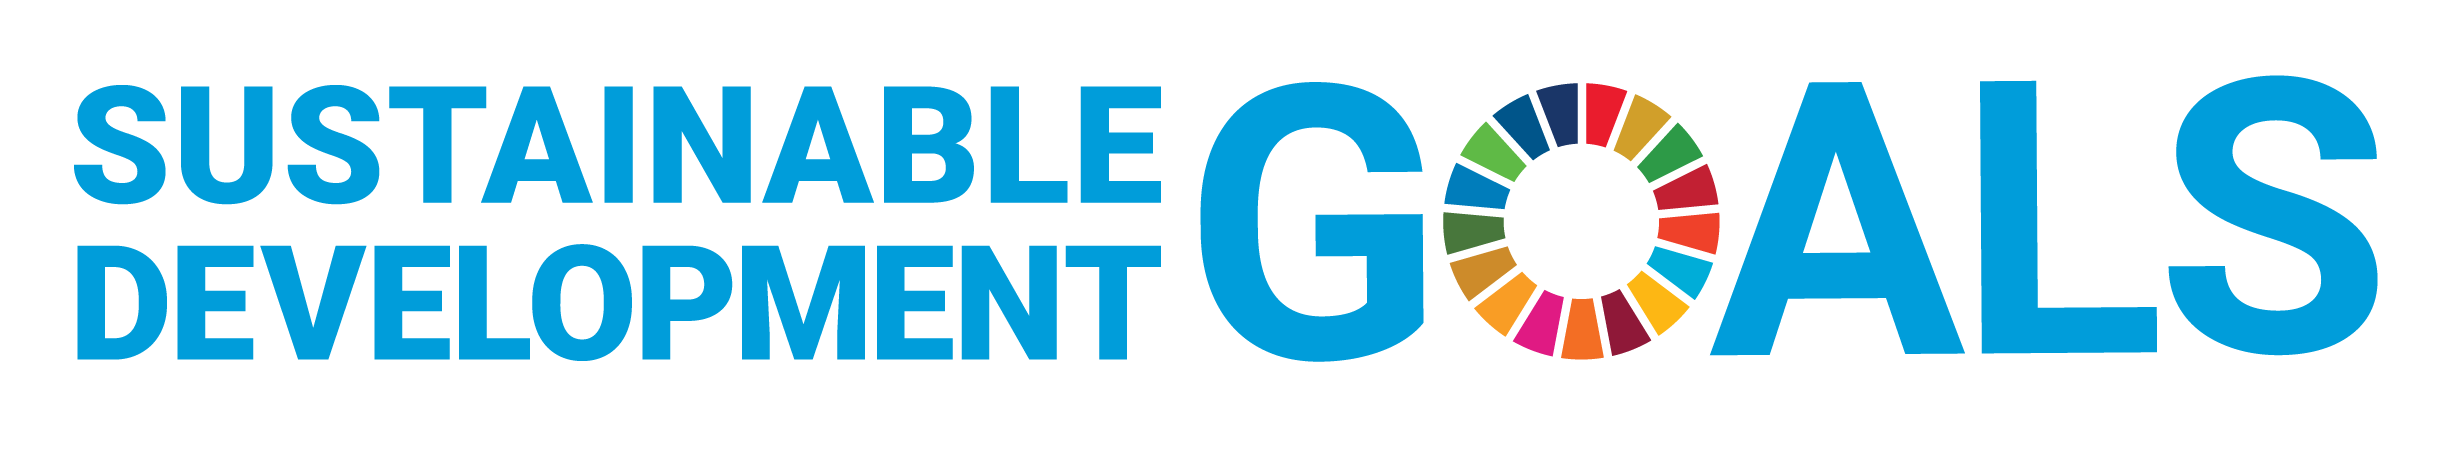 Sustainable Development Goals logo without UN emblem